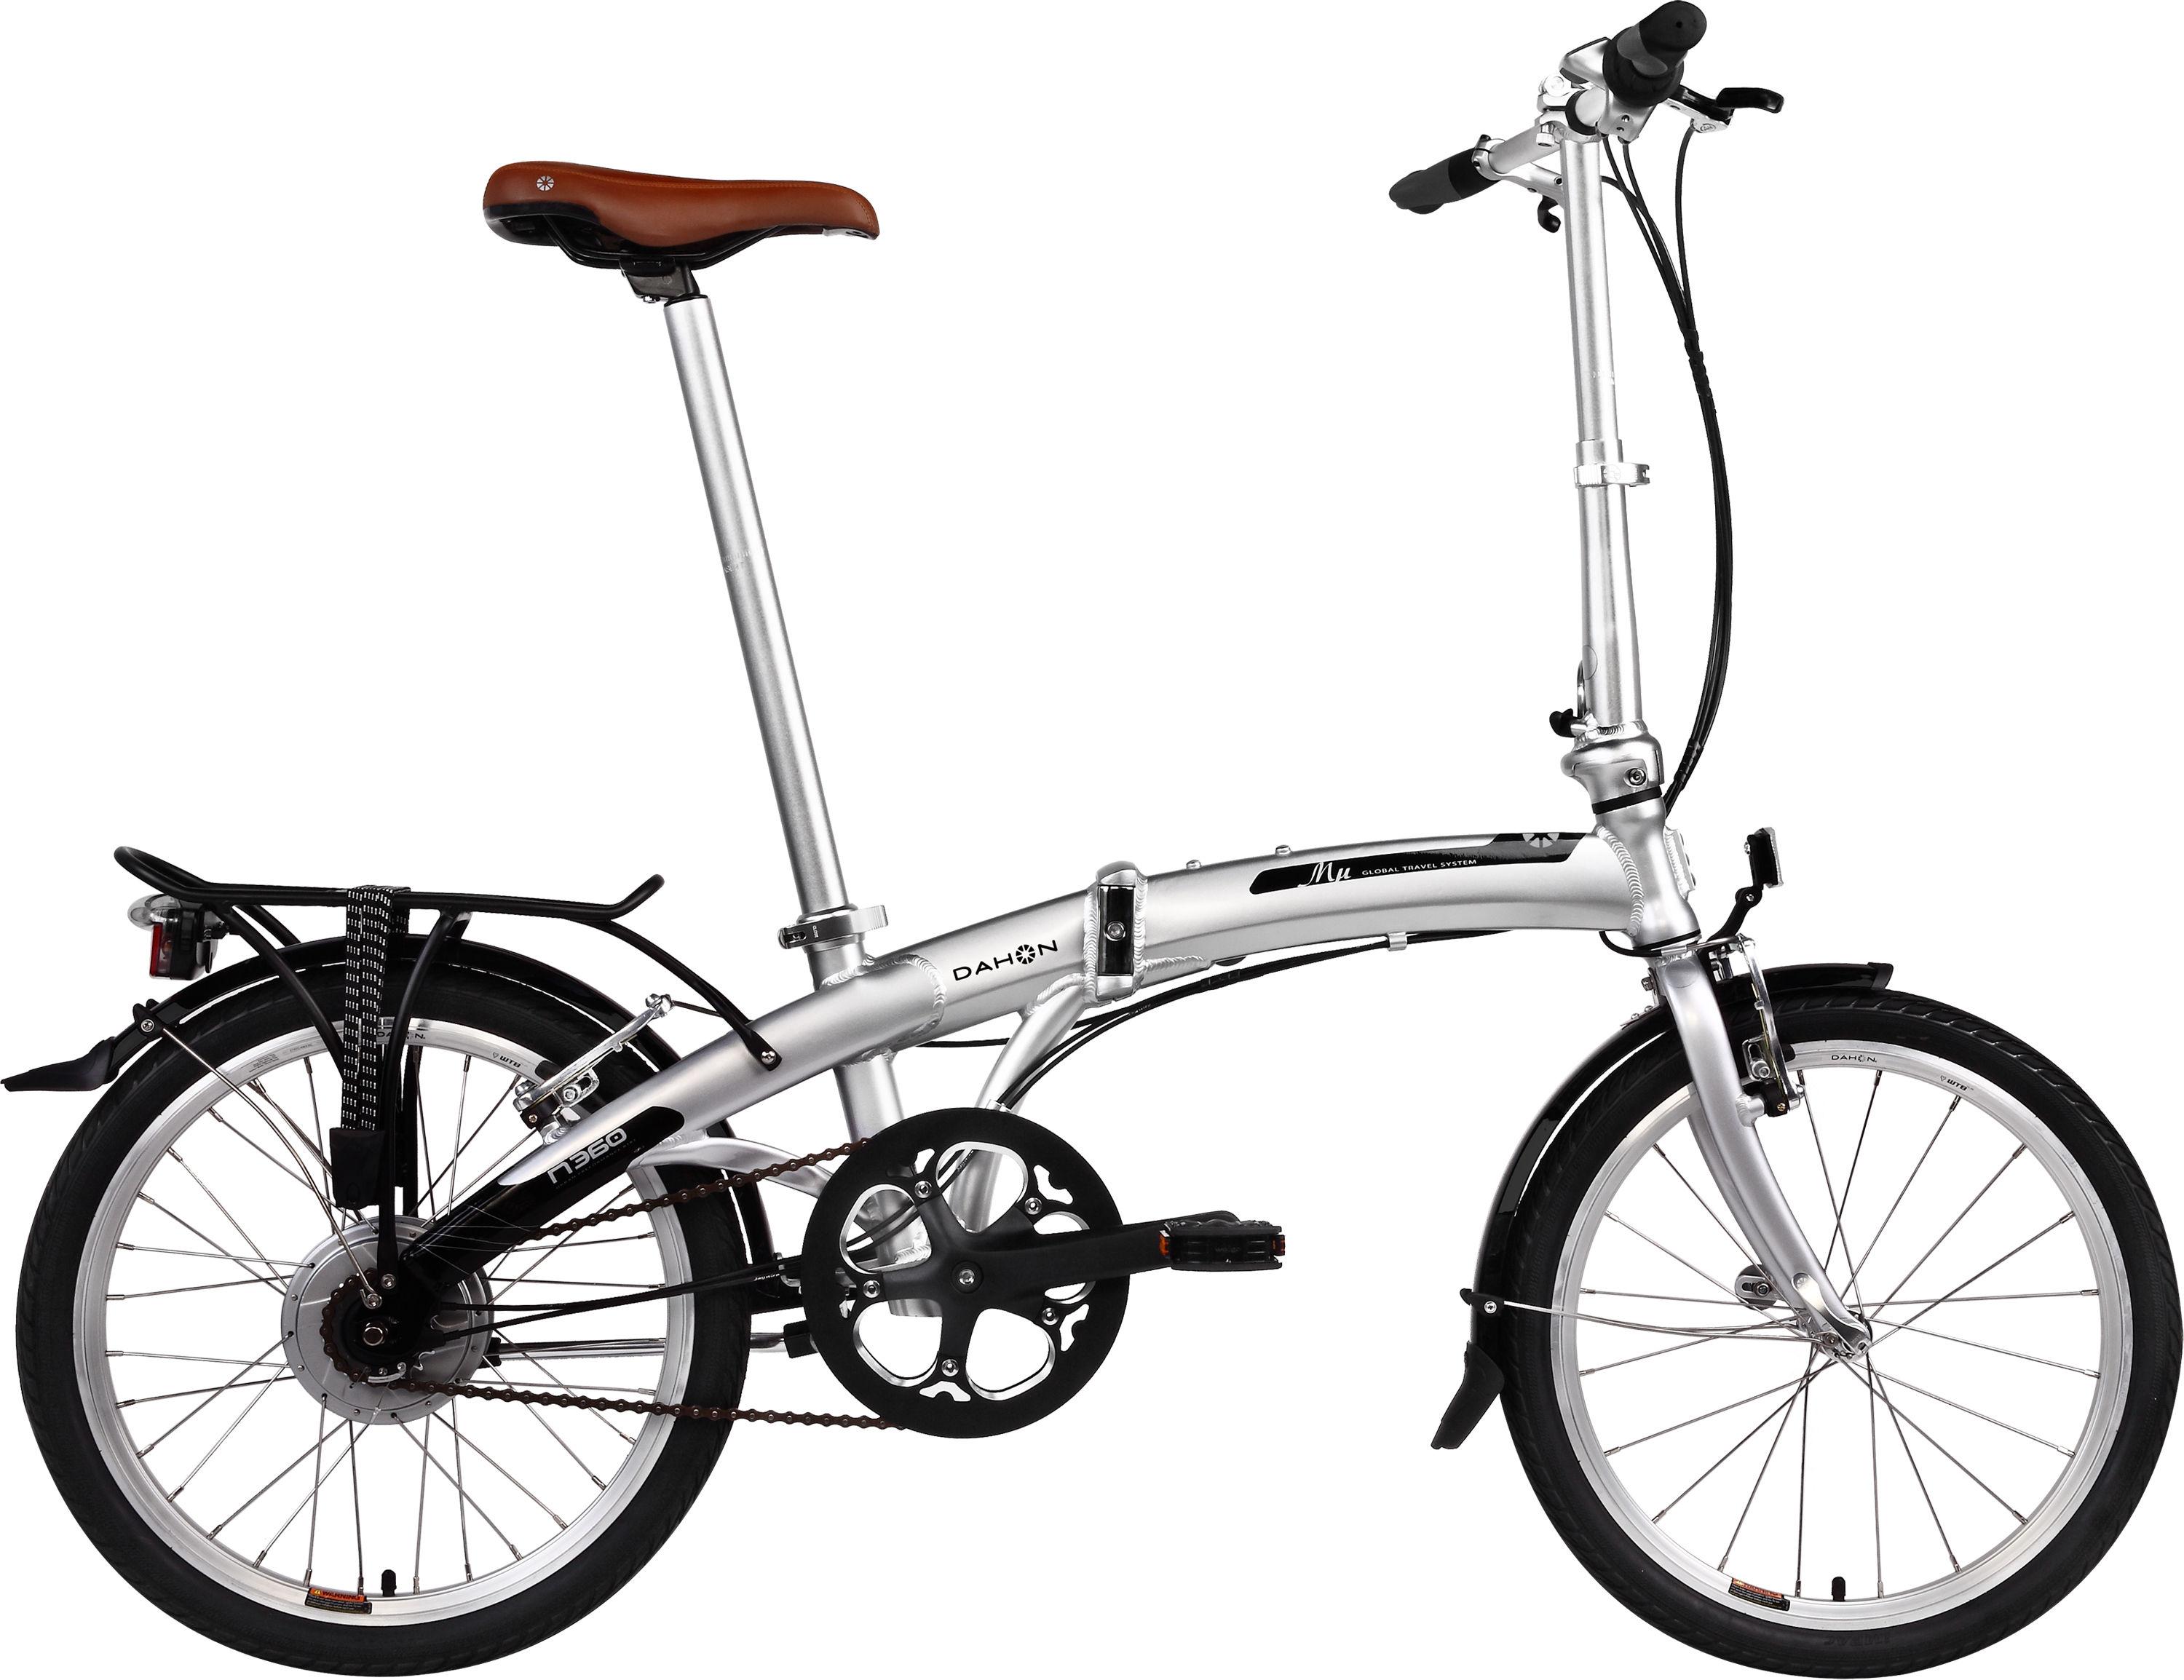 Foto Bicicleta plegable Dahon - Mu N360 - 2013 - 20 Inch Wheel Silver